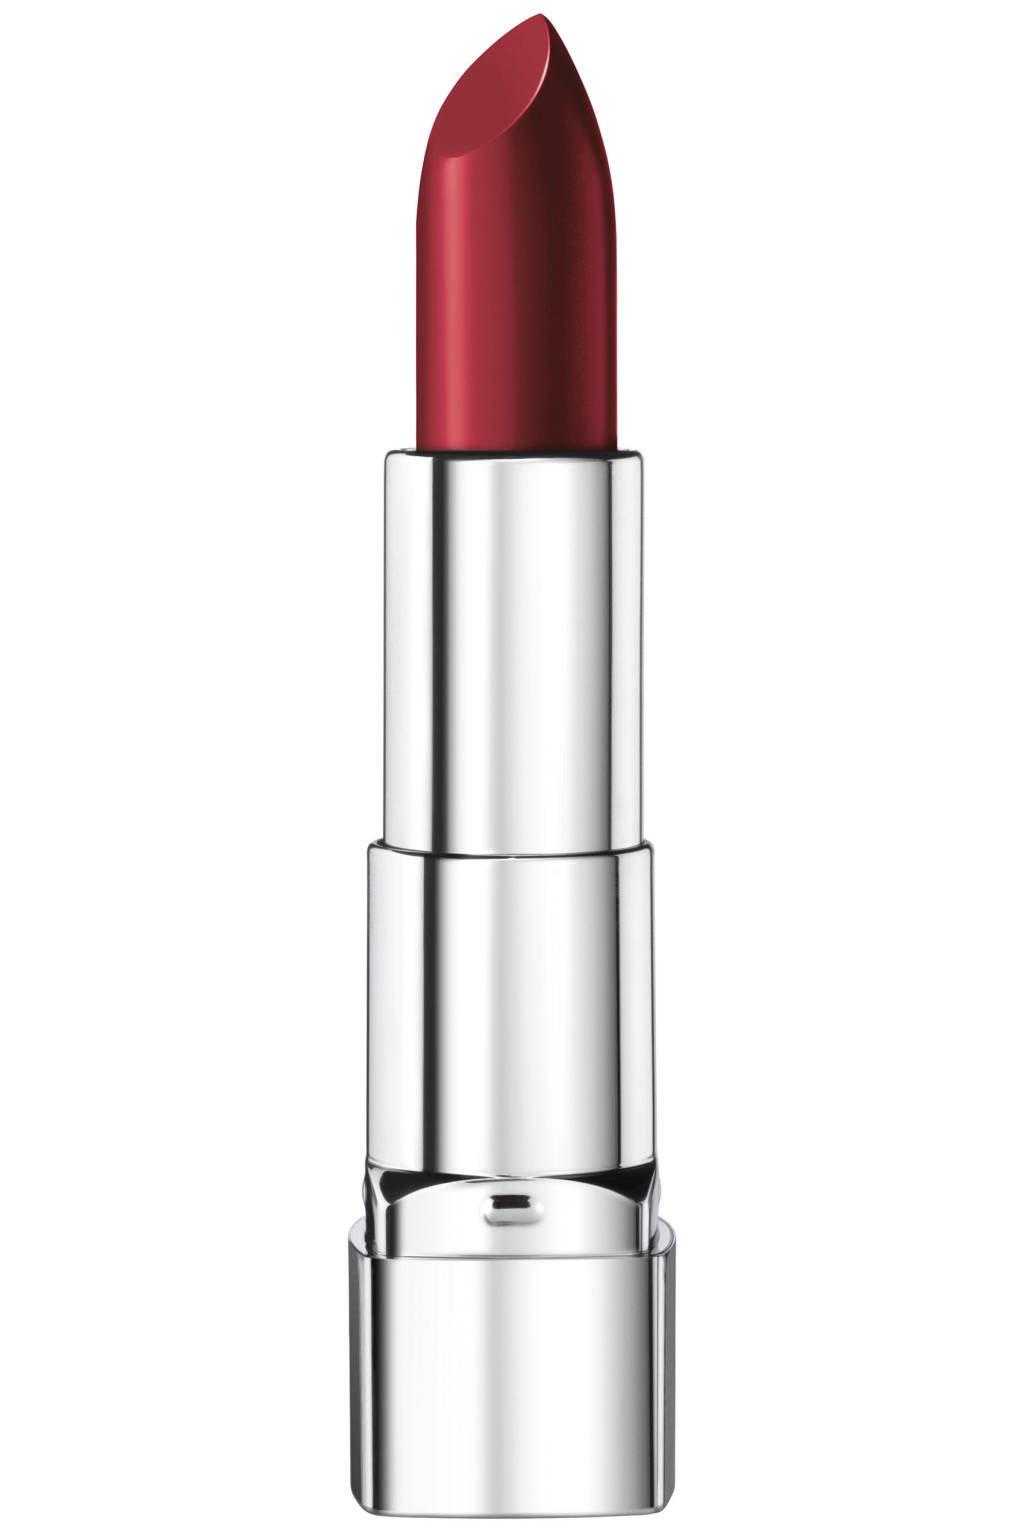 hbz-fall-lipstick-preview-reds-rimmel-lg.jpg